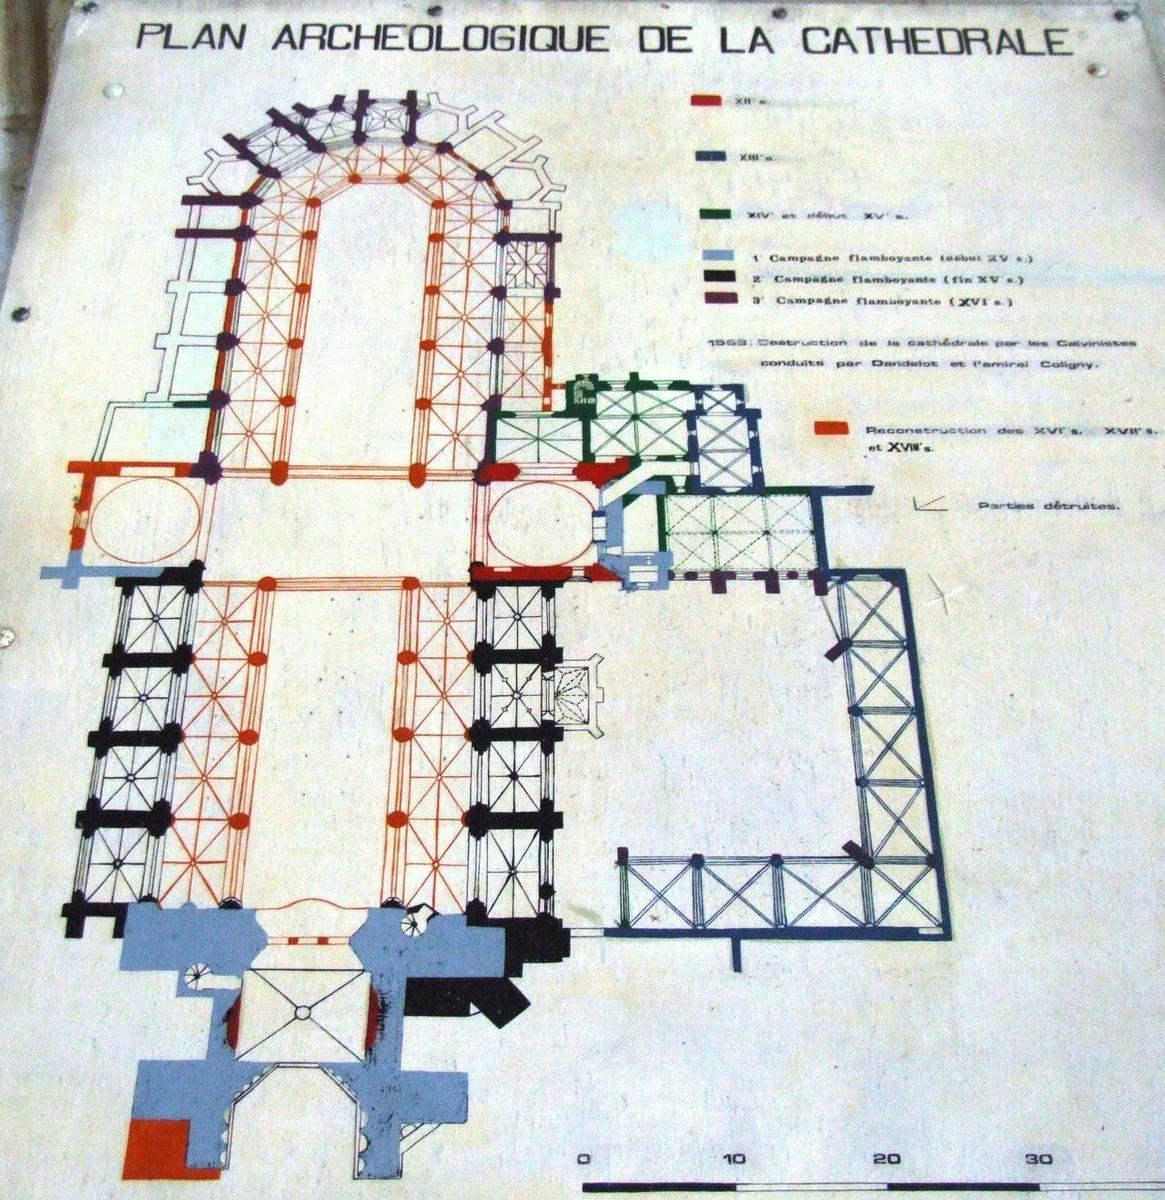 Saintes - Cathédrale Saint-Pierre - Plan archéologique de la cathédrale 